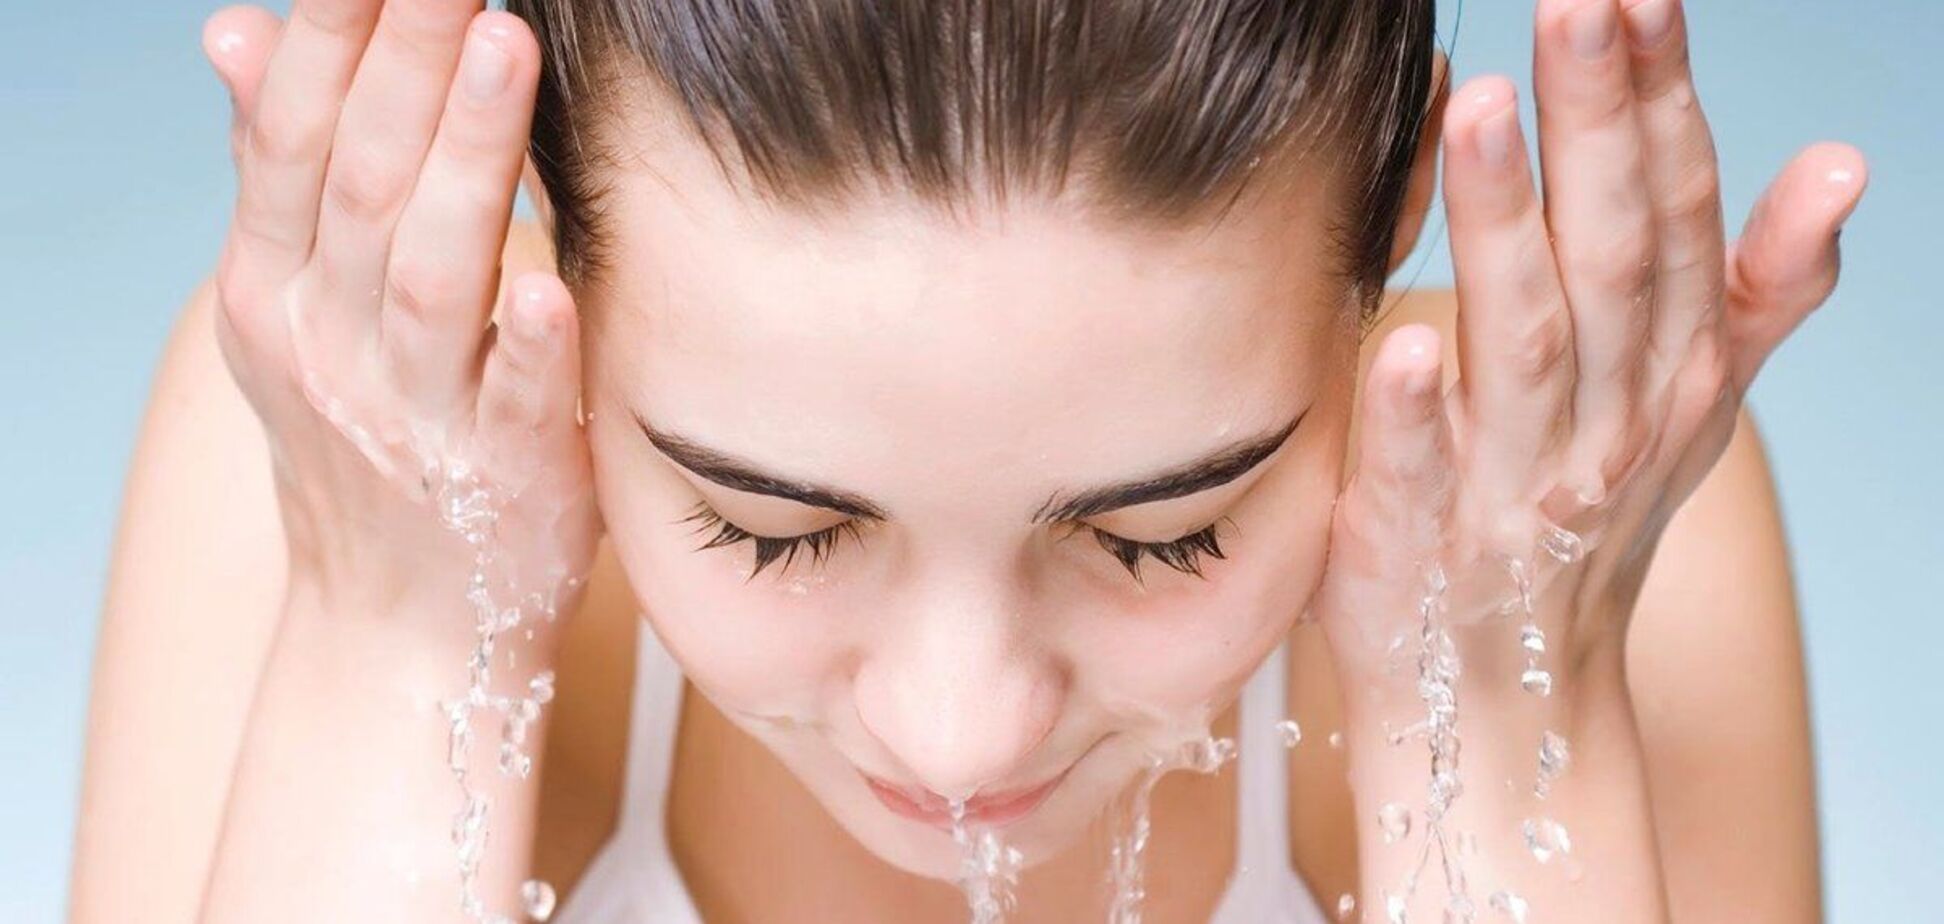 Эксперты не рекомендуют пользоваться мылом для очистки лица